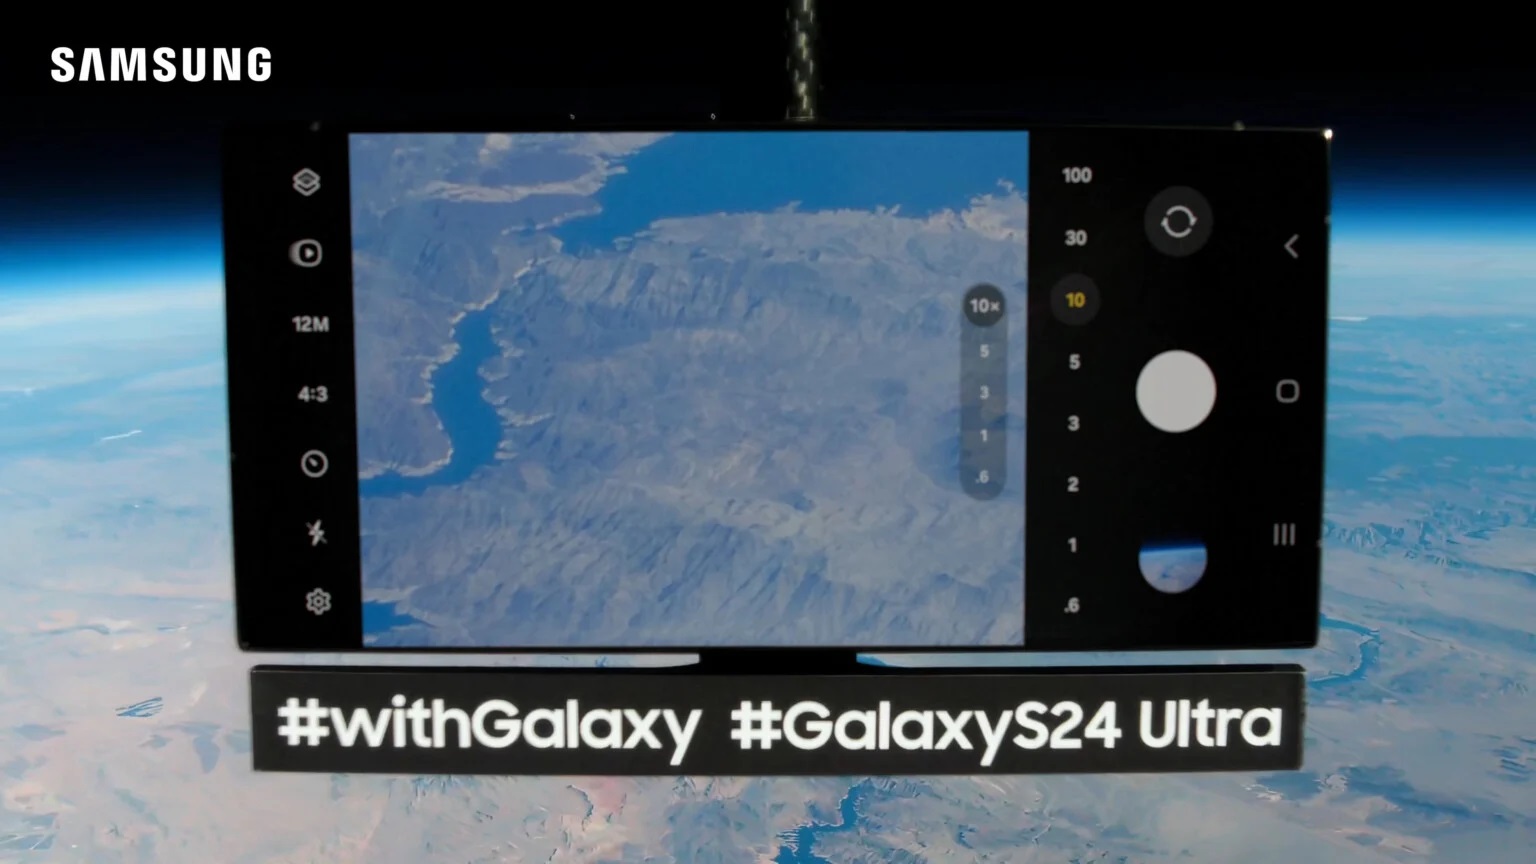 Samsung ha inviato l'ammiraglia Galaxy S24 Ultra nello spazio